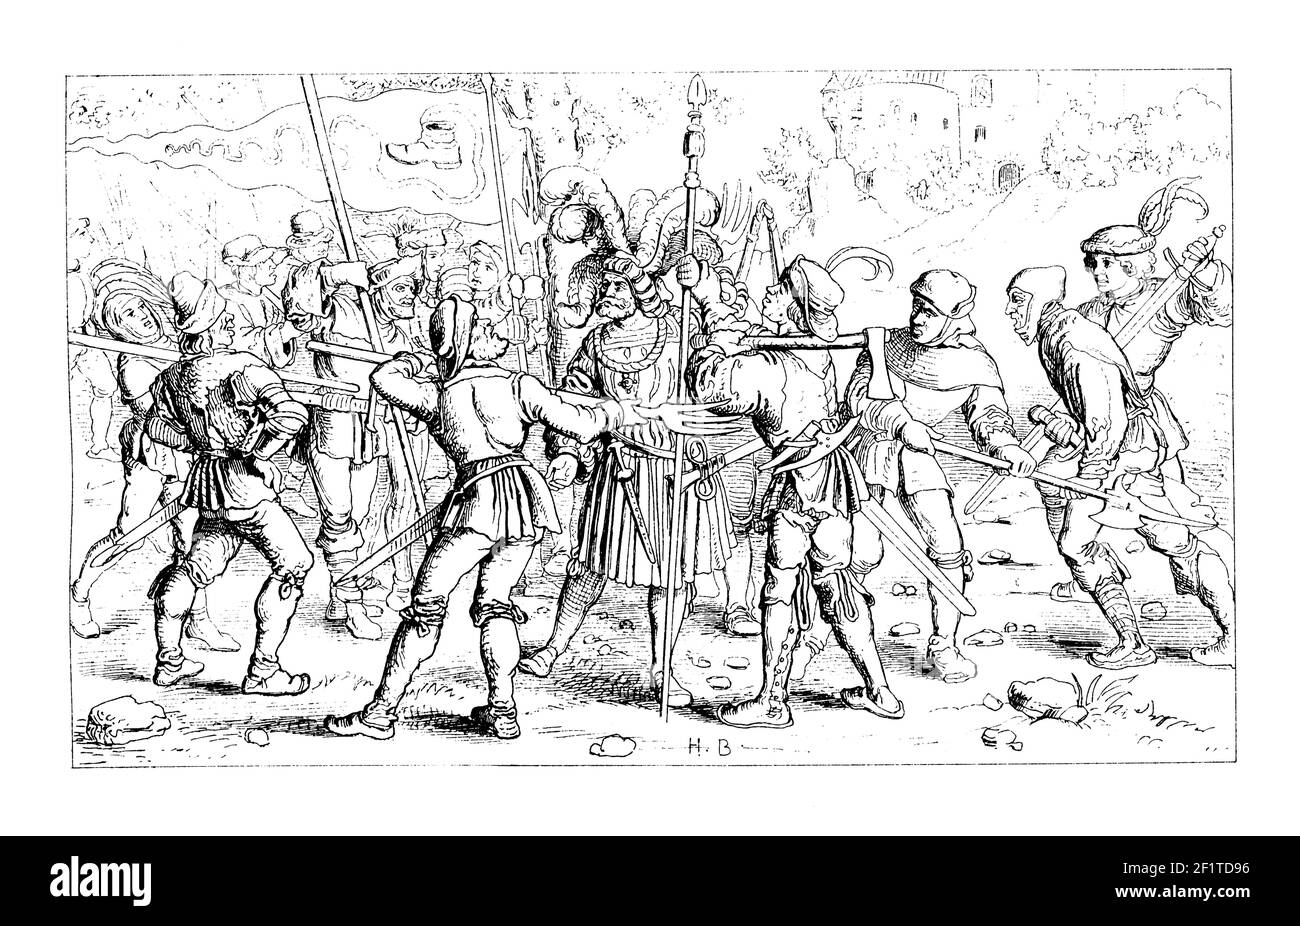 Antike Illustration von H. Burkgmairs Gemälde von Adligen, die die rebellierenden Bauern angreifen. Veröffentlicht in Bilder-Atlas zur Weltgeschichte nach Kunst Stockfoto